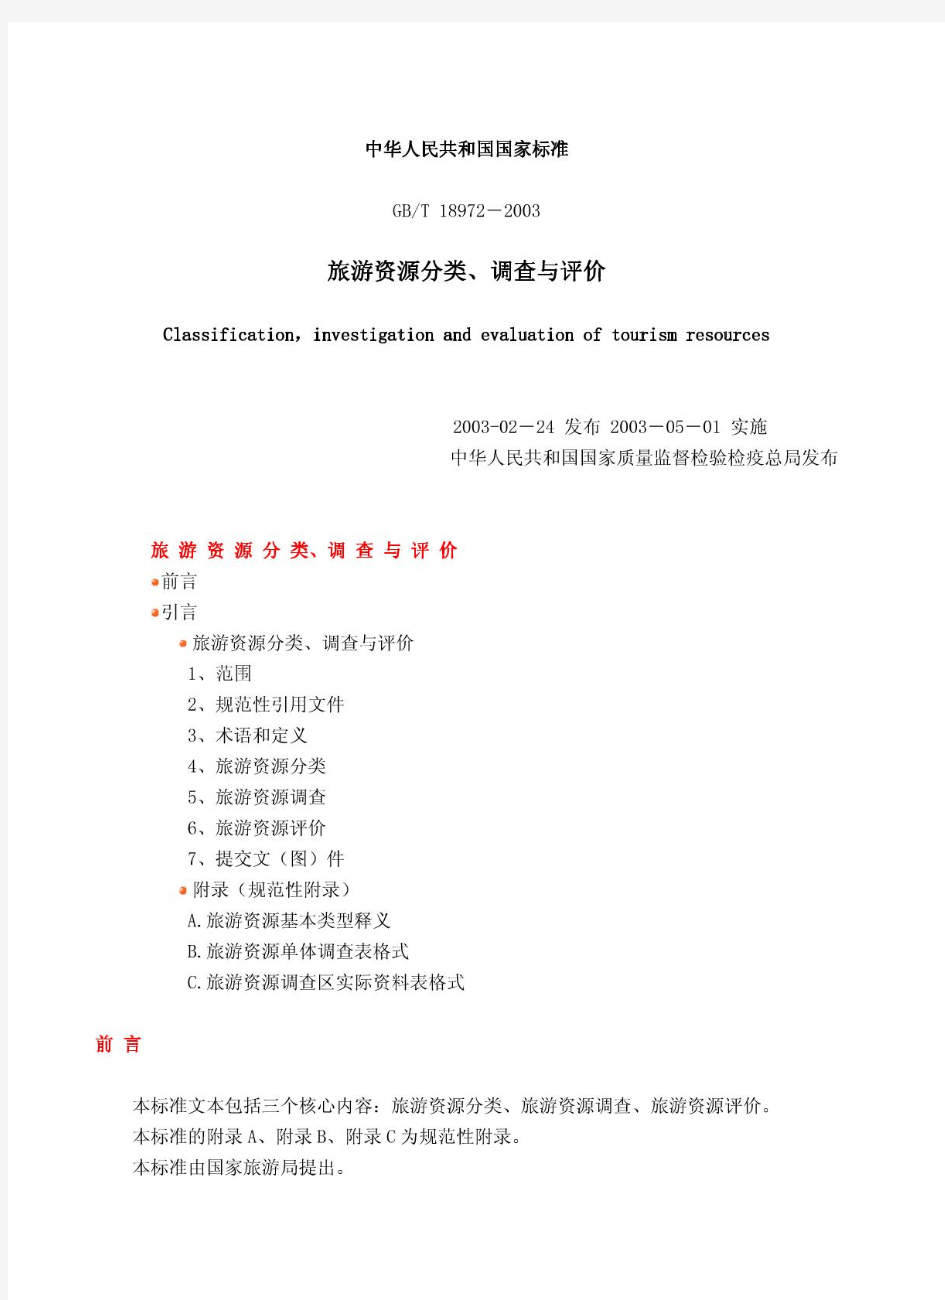 中华人民共和国国家标准旅游资源分类、调查与评价